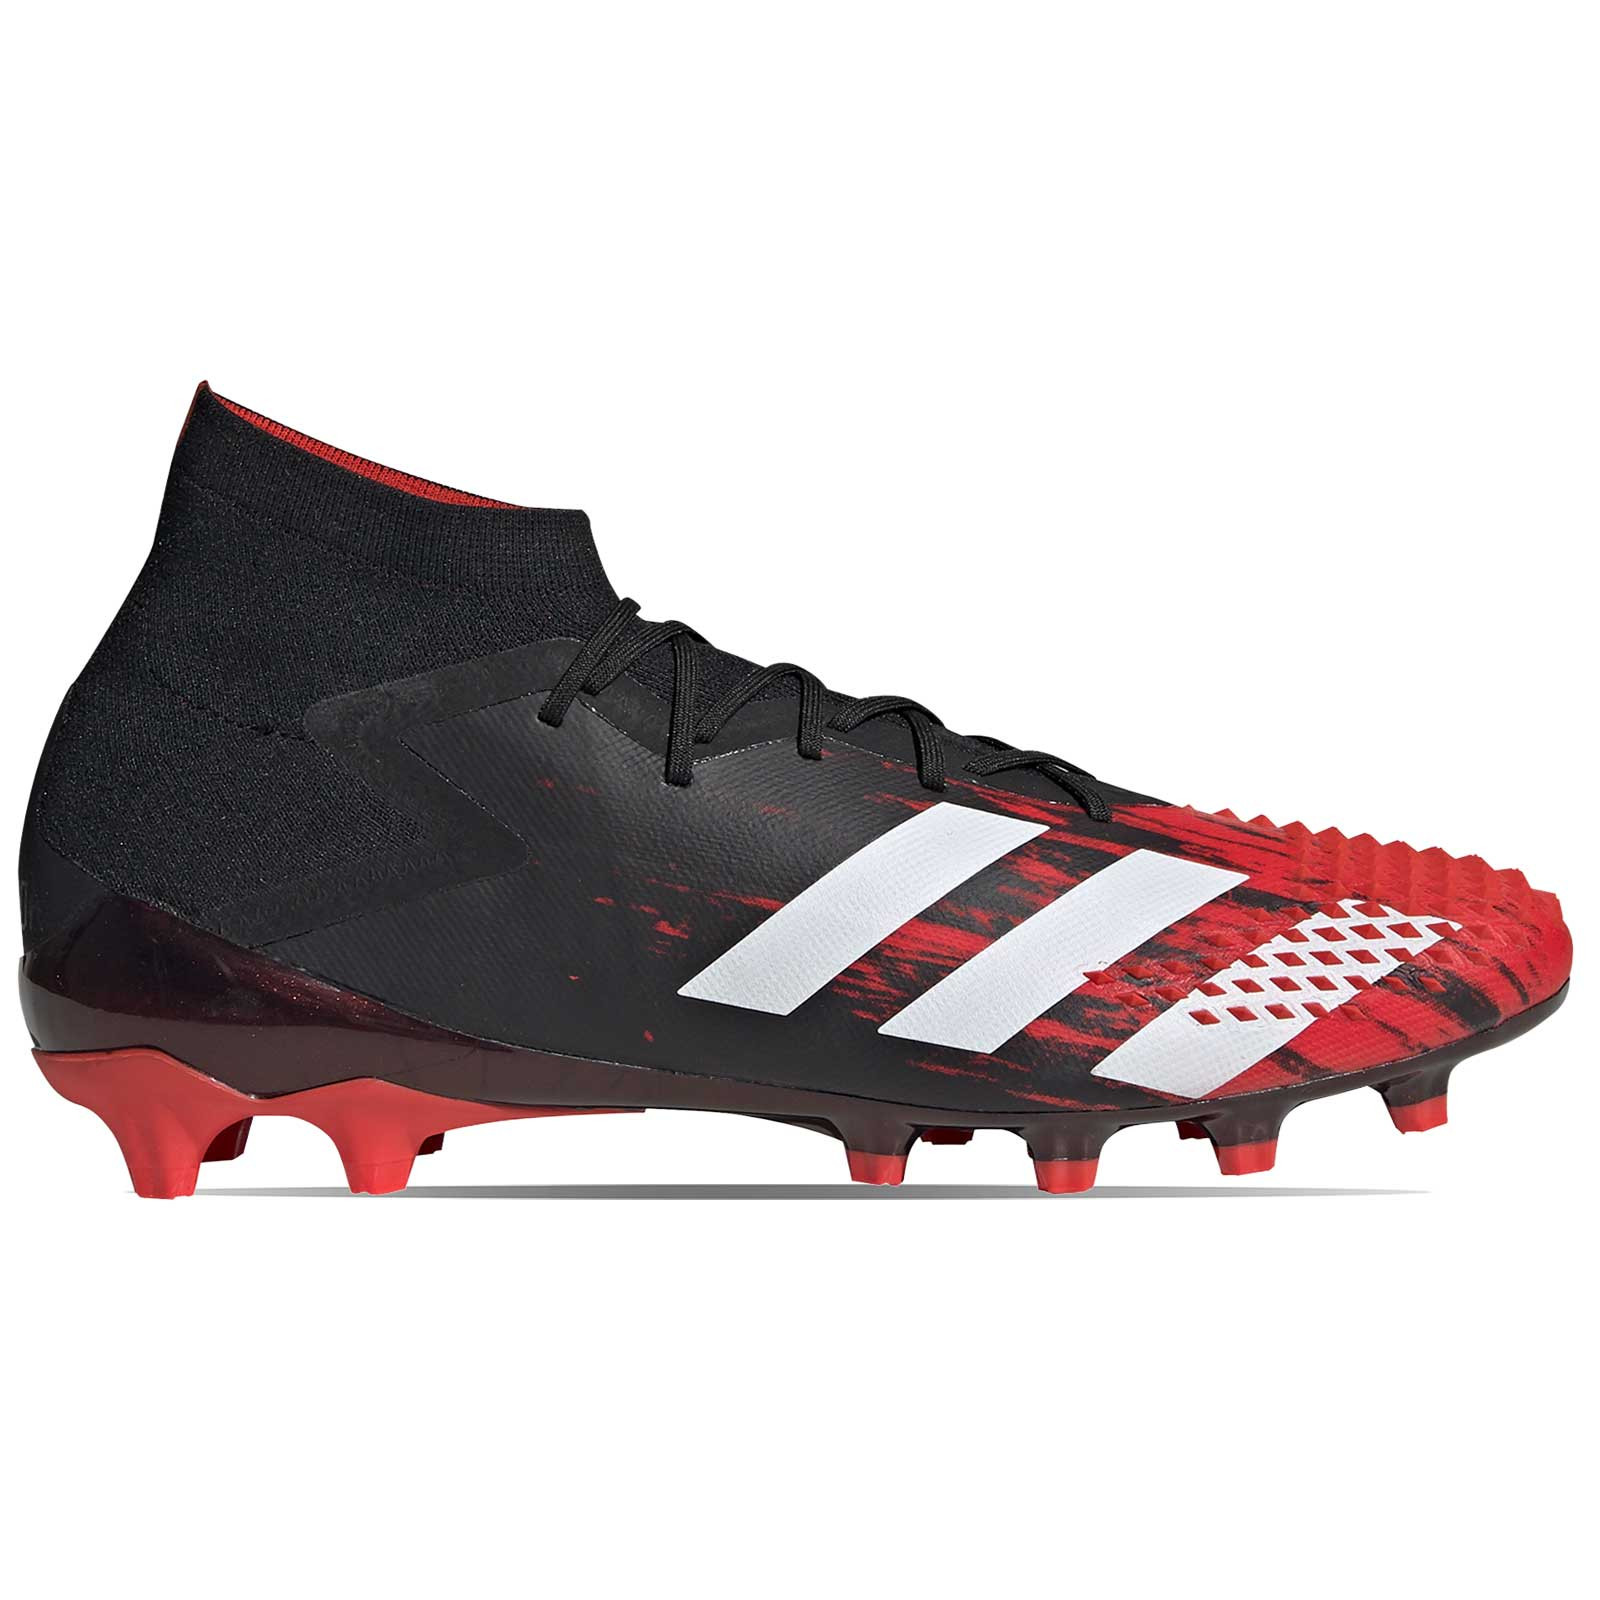 Botas adidas Predator 20.1 AG rojas negras | futbolmania